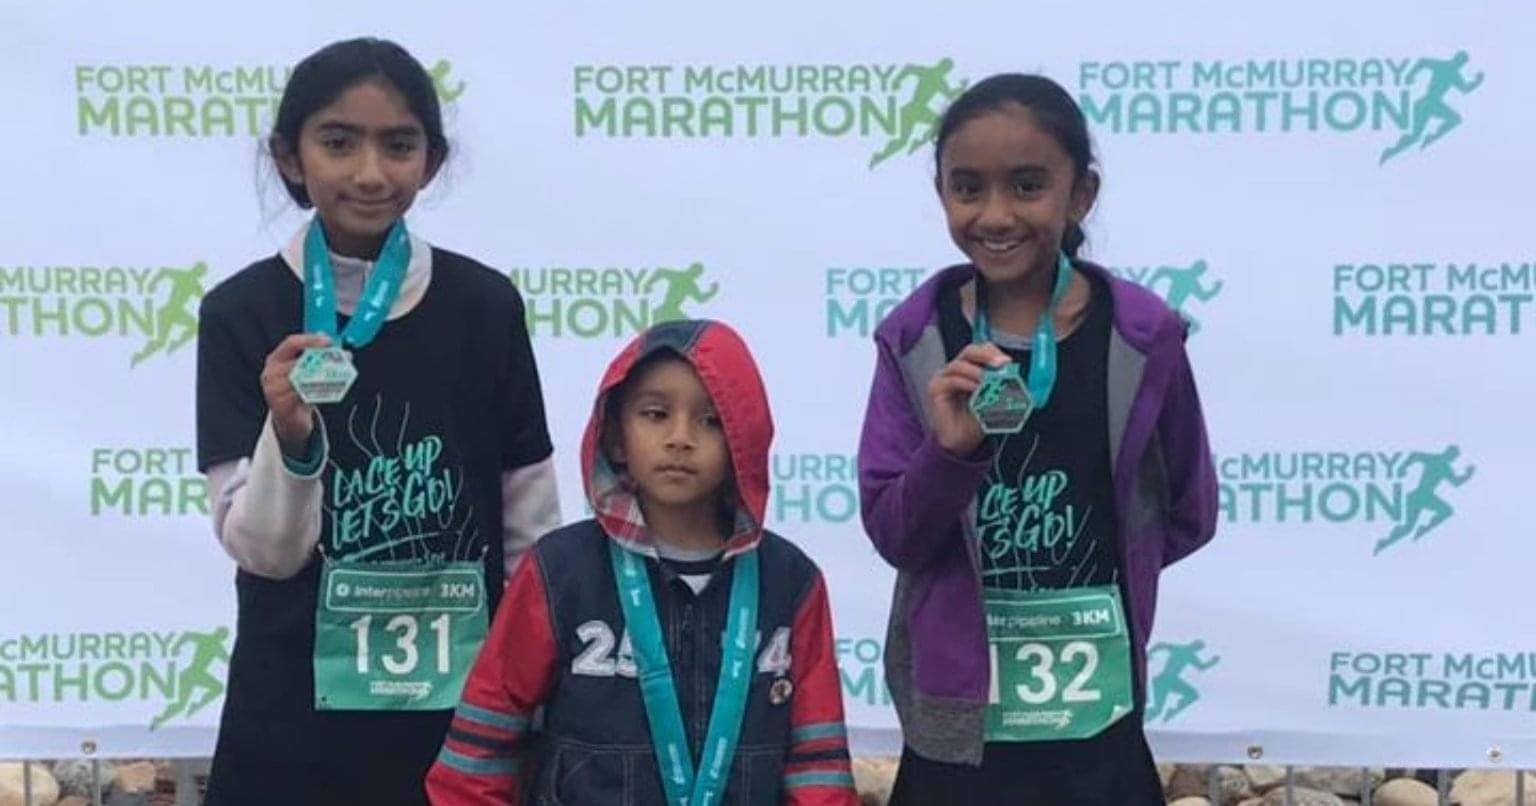 trois enfants souriants avec des médailles autour du cou debout devant un panneau indiquant le marathon de Fort McMurray